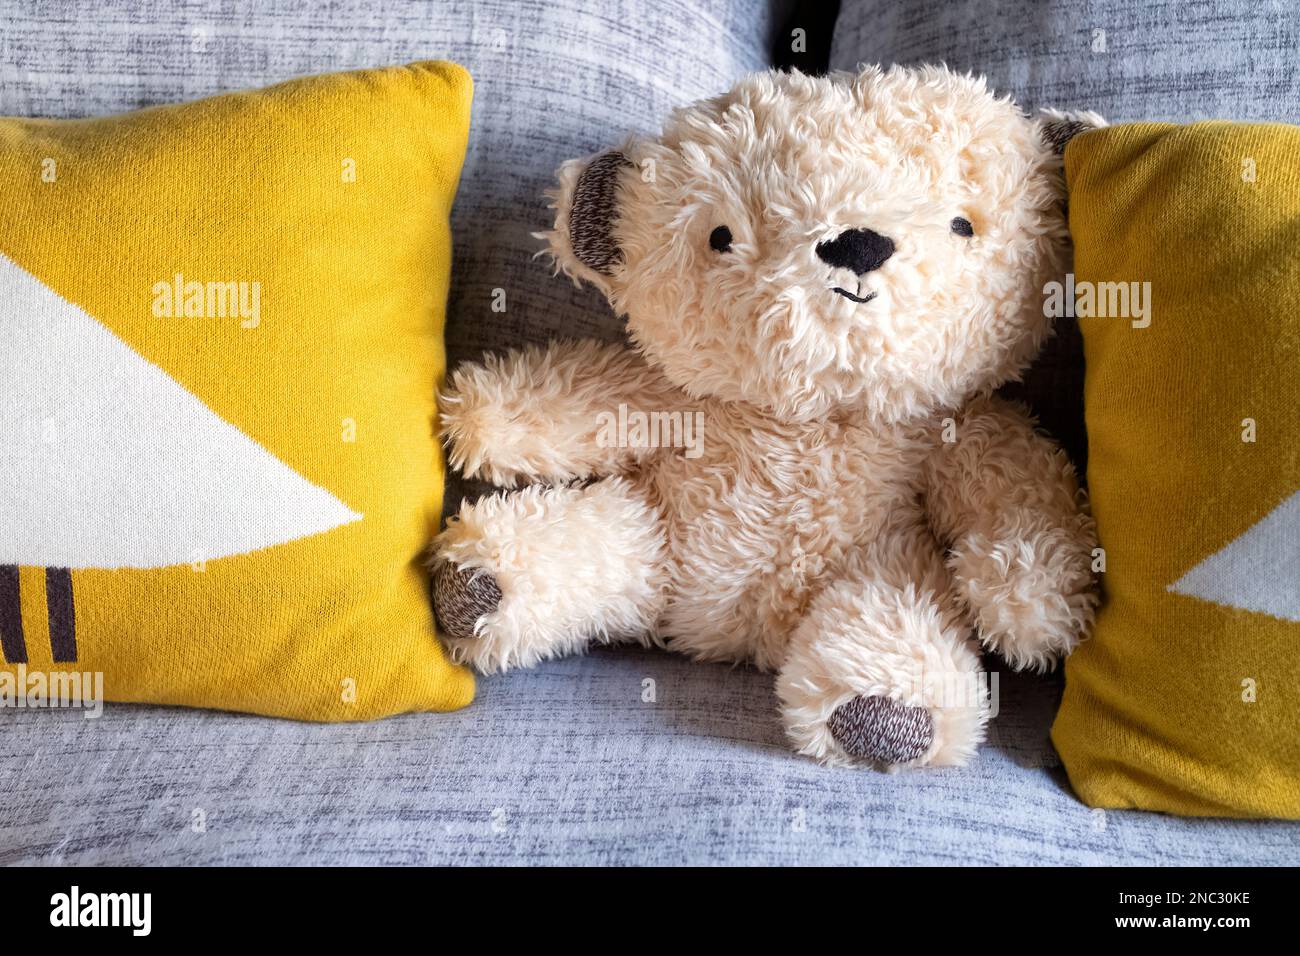 Ein kleiner, kuscheliger, pelziger Teddybär mit einem freundlichen Gesicht, auf einem Bett zwischen zwei Kissen platziert. Der Teddy gibt dem Schlafzimmer ein schönes persönliches Zuhause Stockfoto